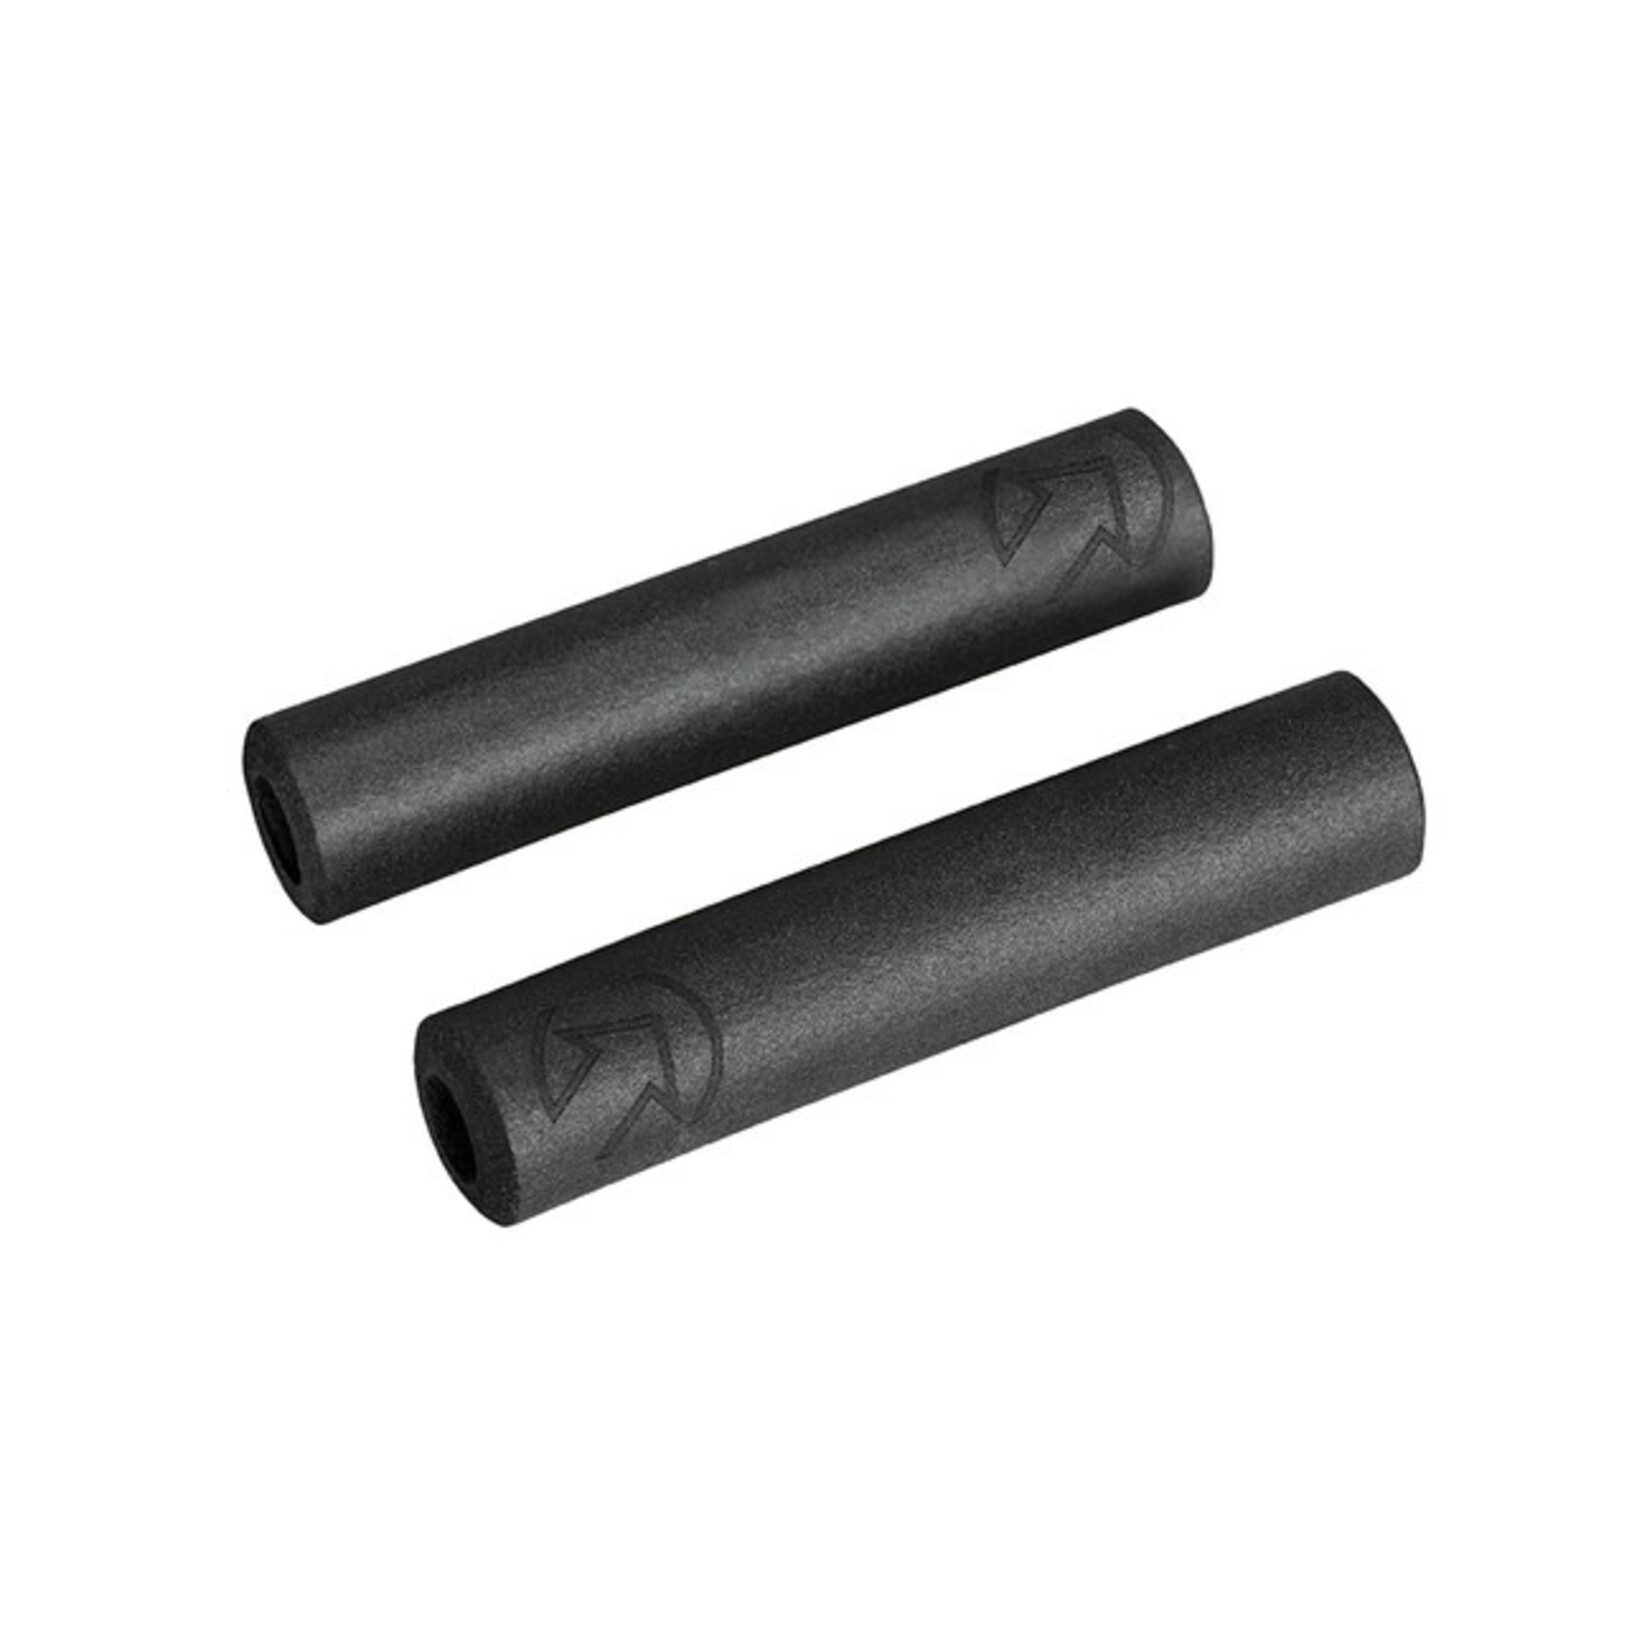 Pro Slide-On Race Grips Black 32mm / 130mm